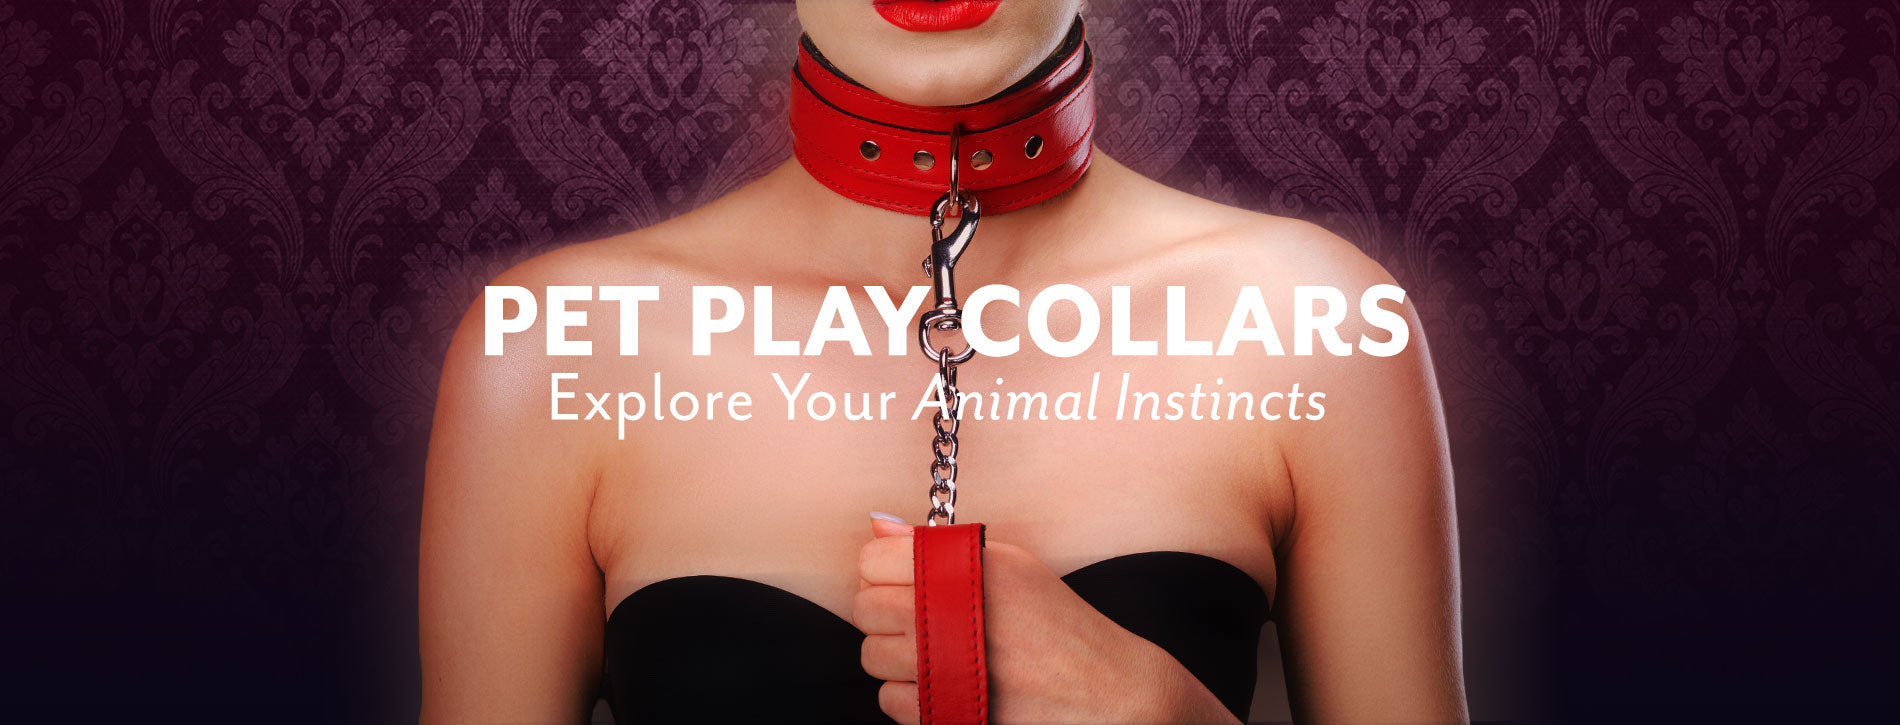 Erotic Pet Play Collars